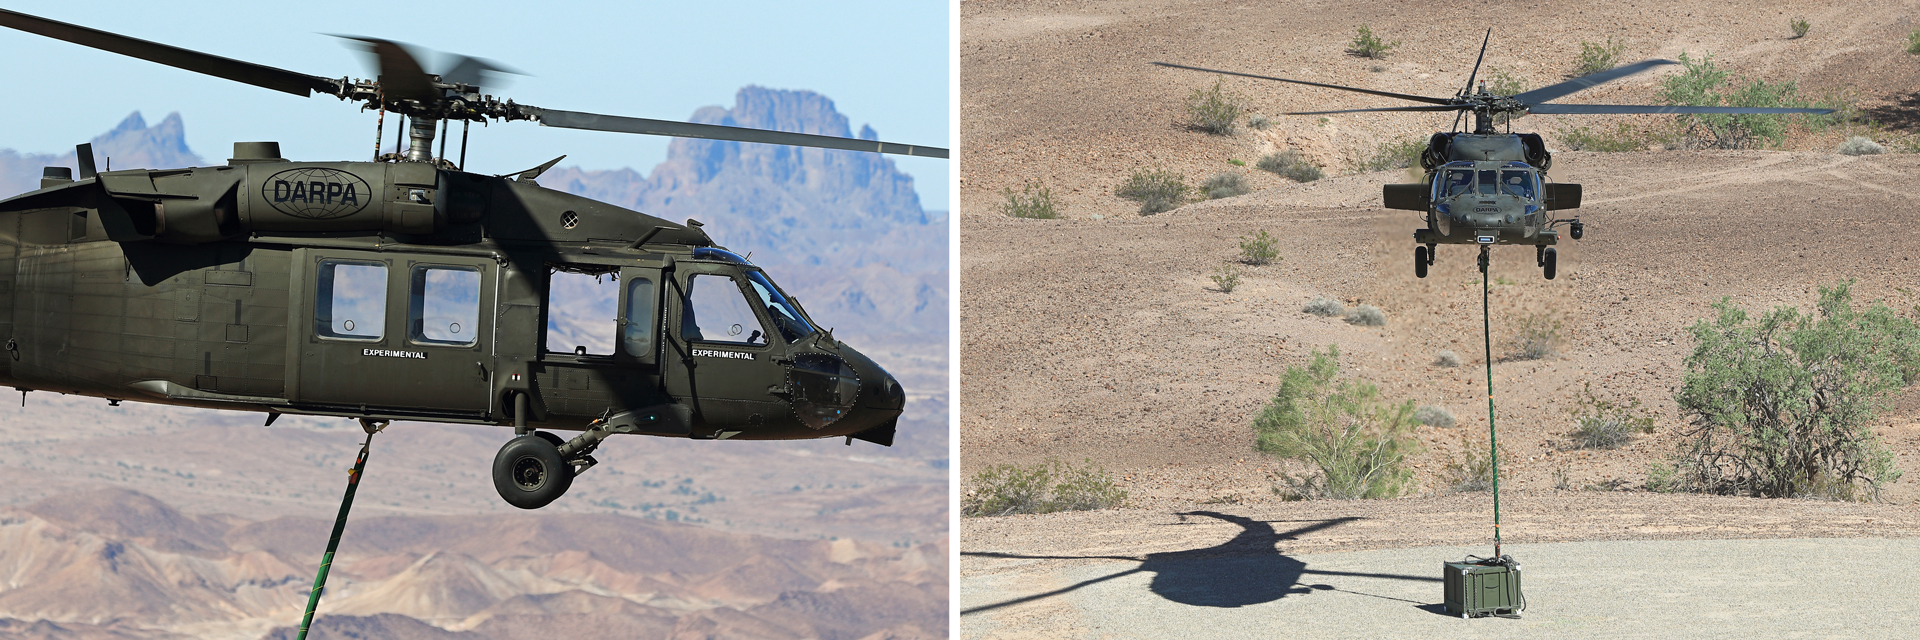 运输外部负载时,自主黑鹰直升机被地面重定向控制器位于着陆地点释放其负载,然后土地疏散伤亡。